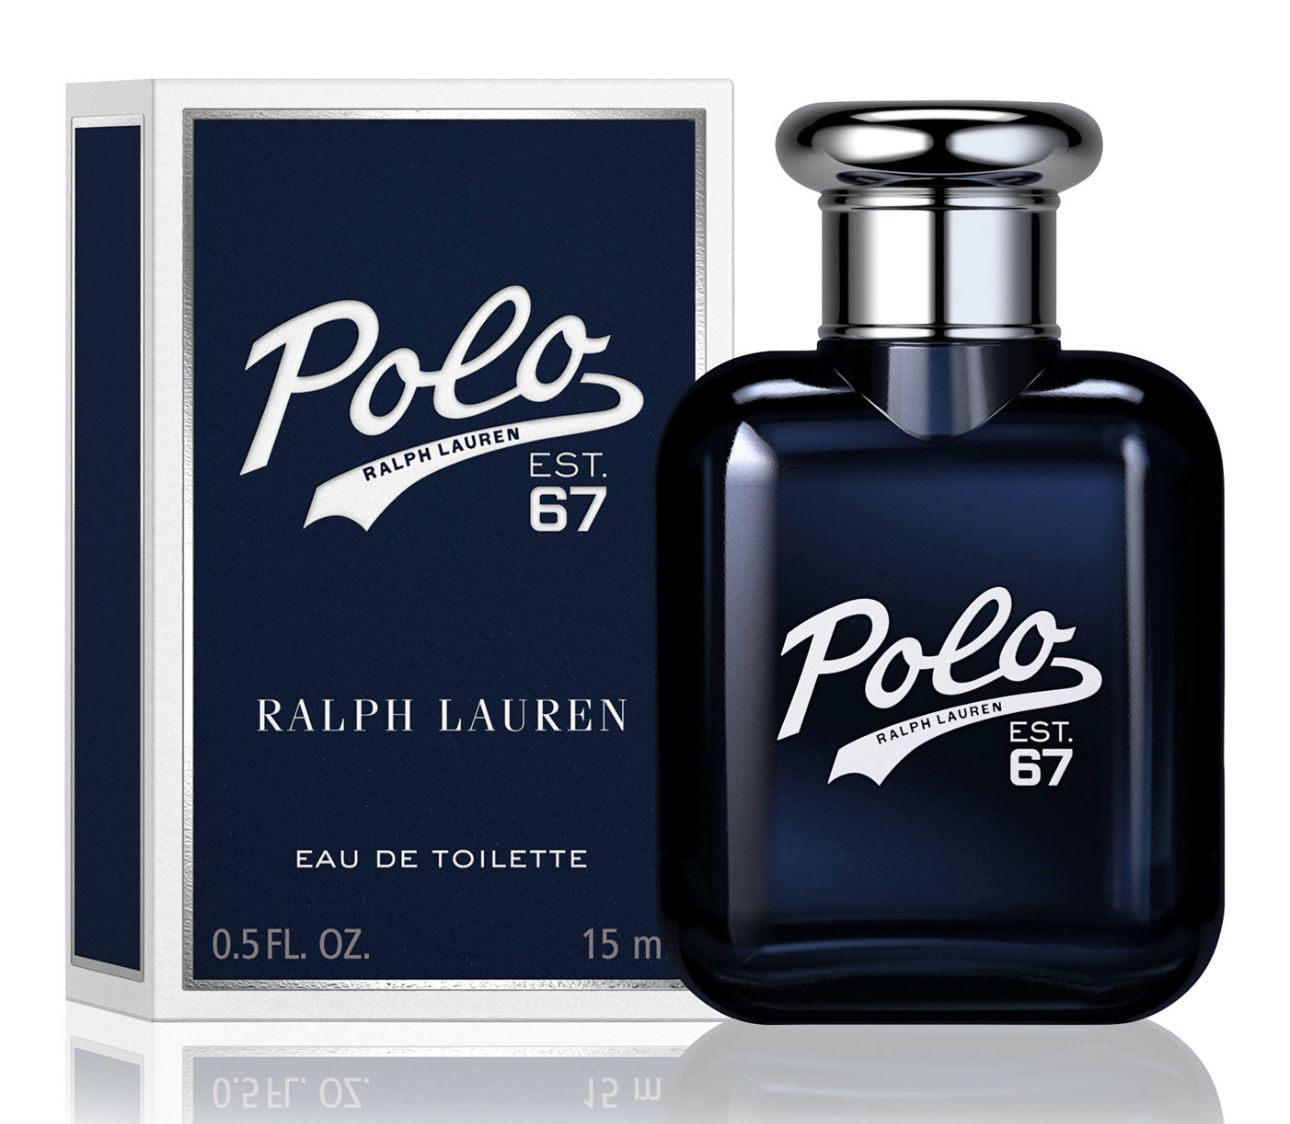 New Men's Polo 67 Eau de Toilette Fragrance Collection